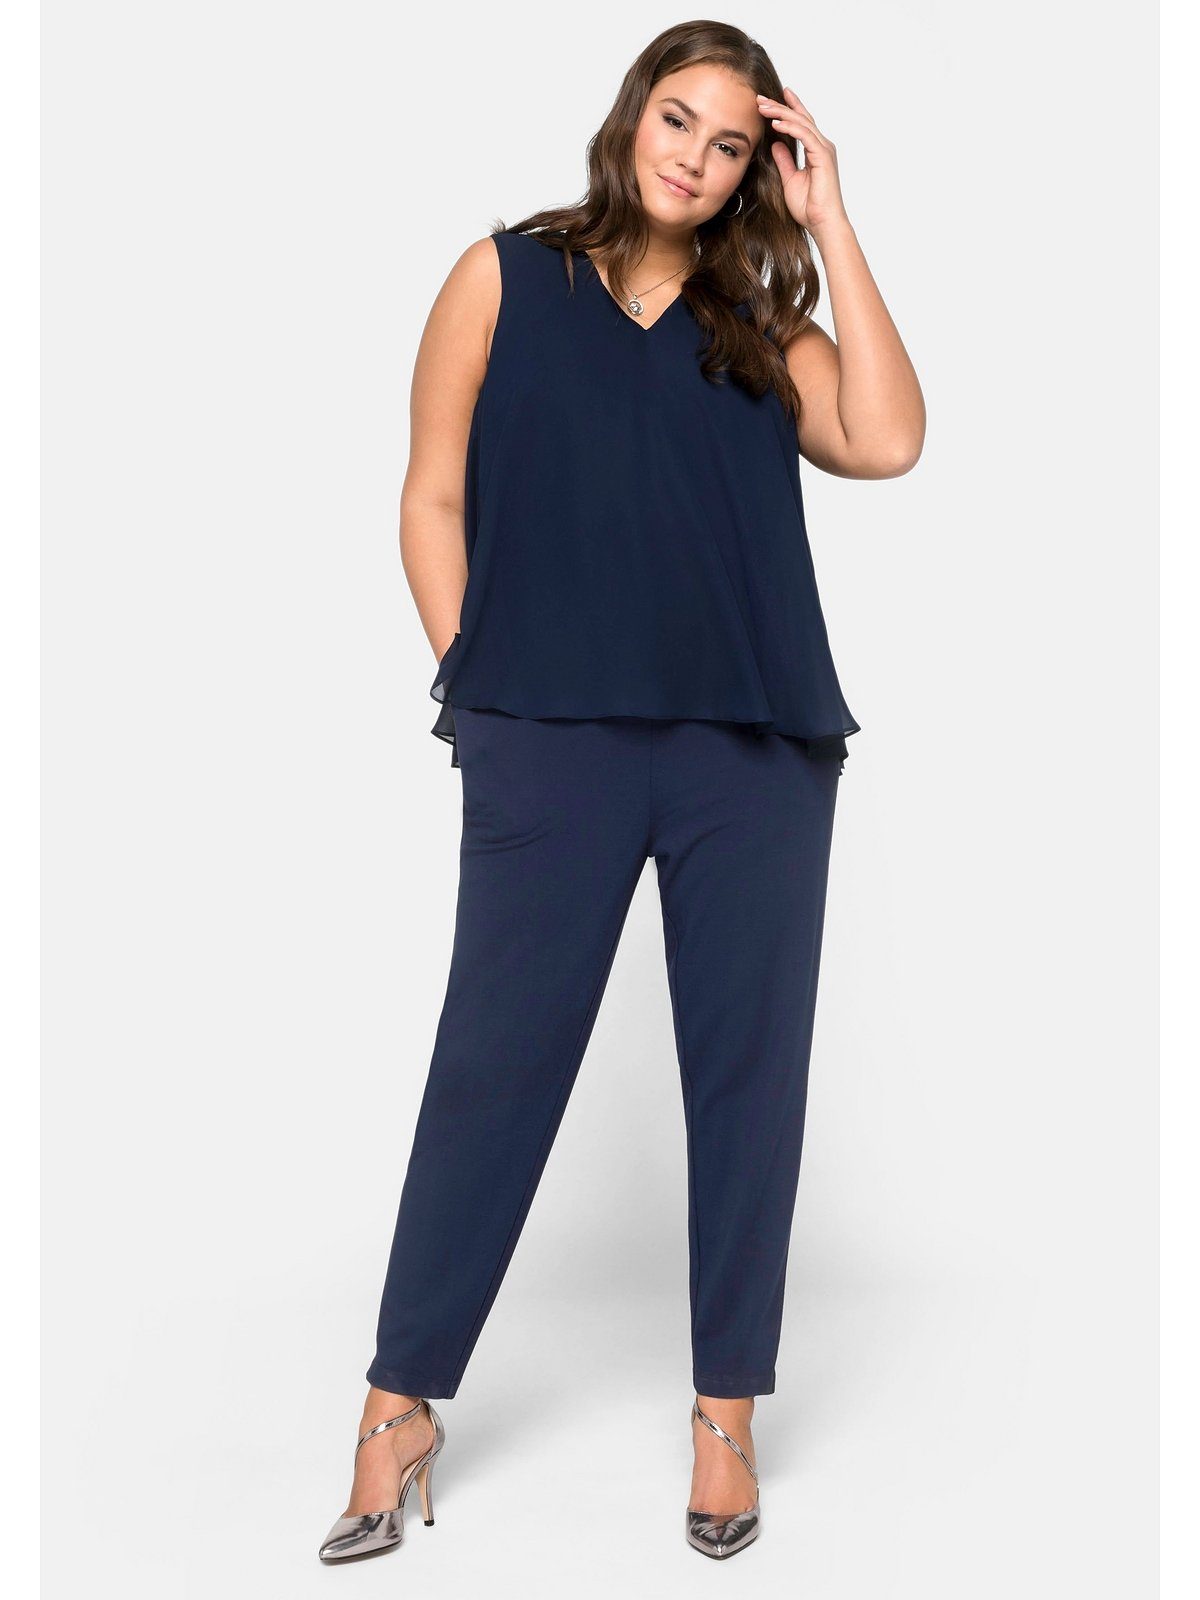 Blaue Overalls für Damen online kaufen | OTTO